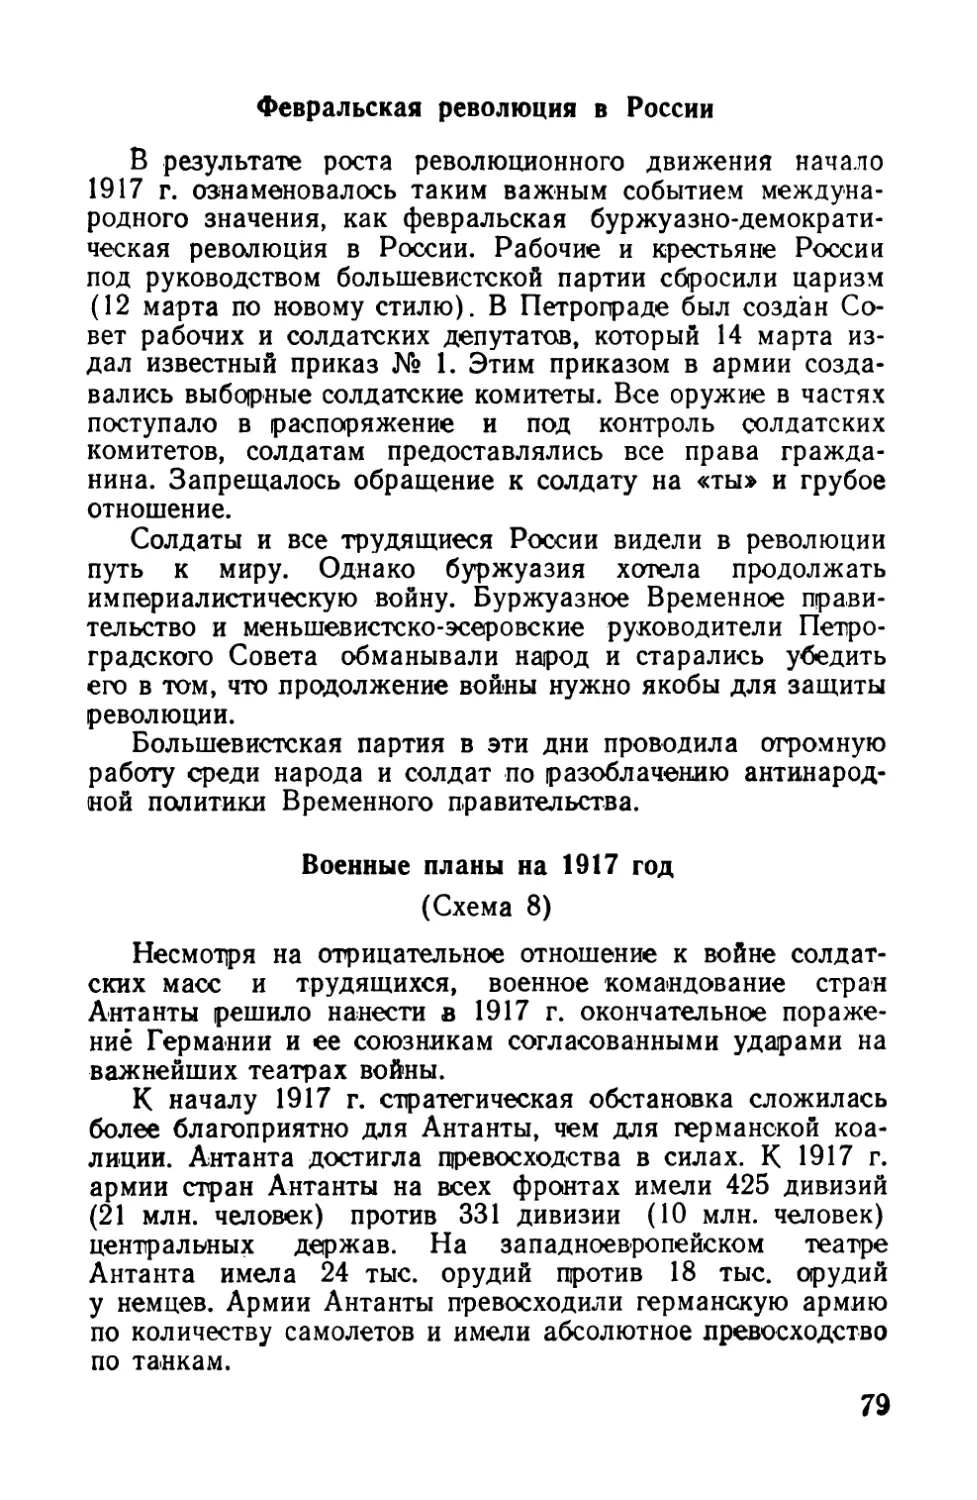 Февральская революция в России
Военные планы на 1917 год